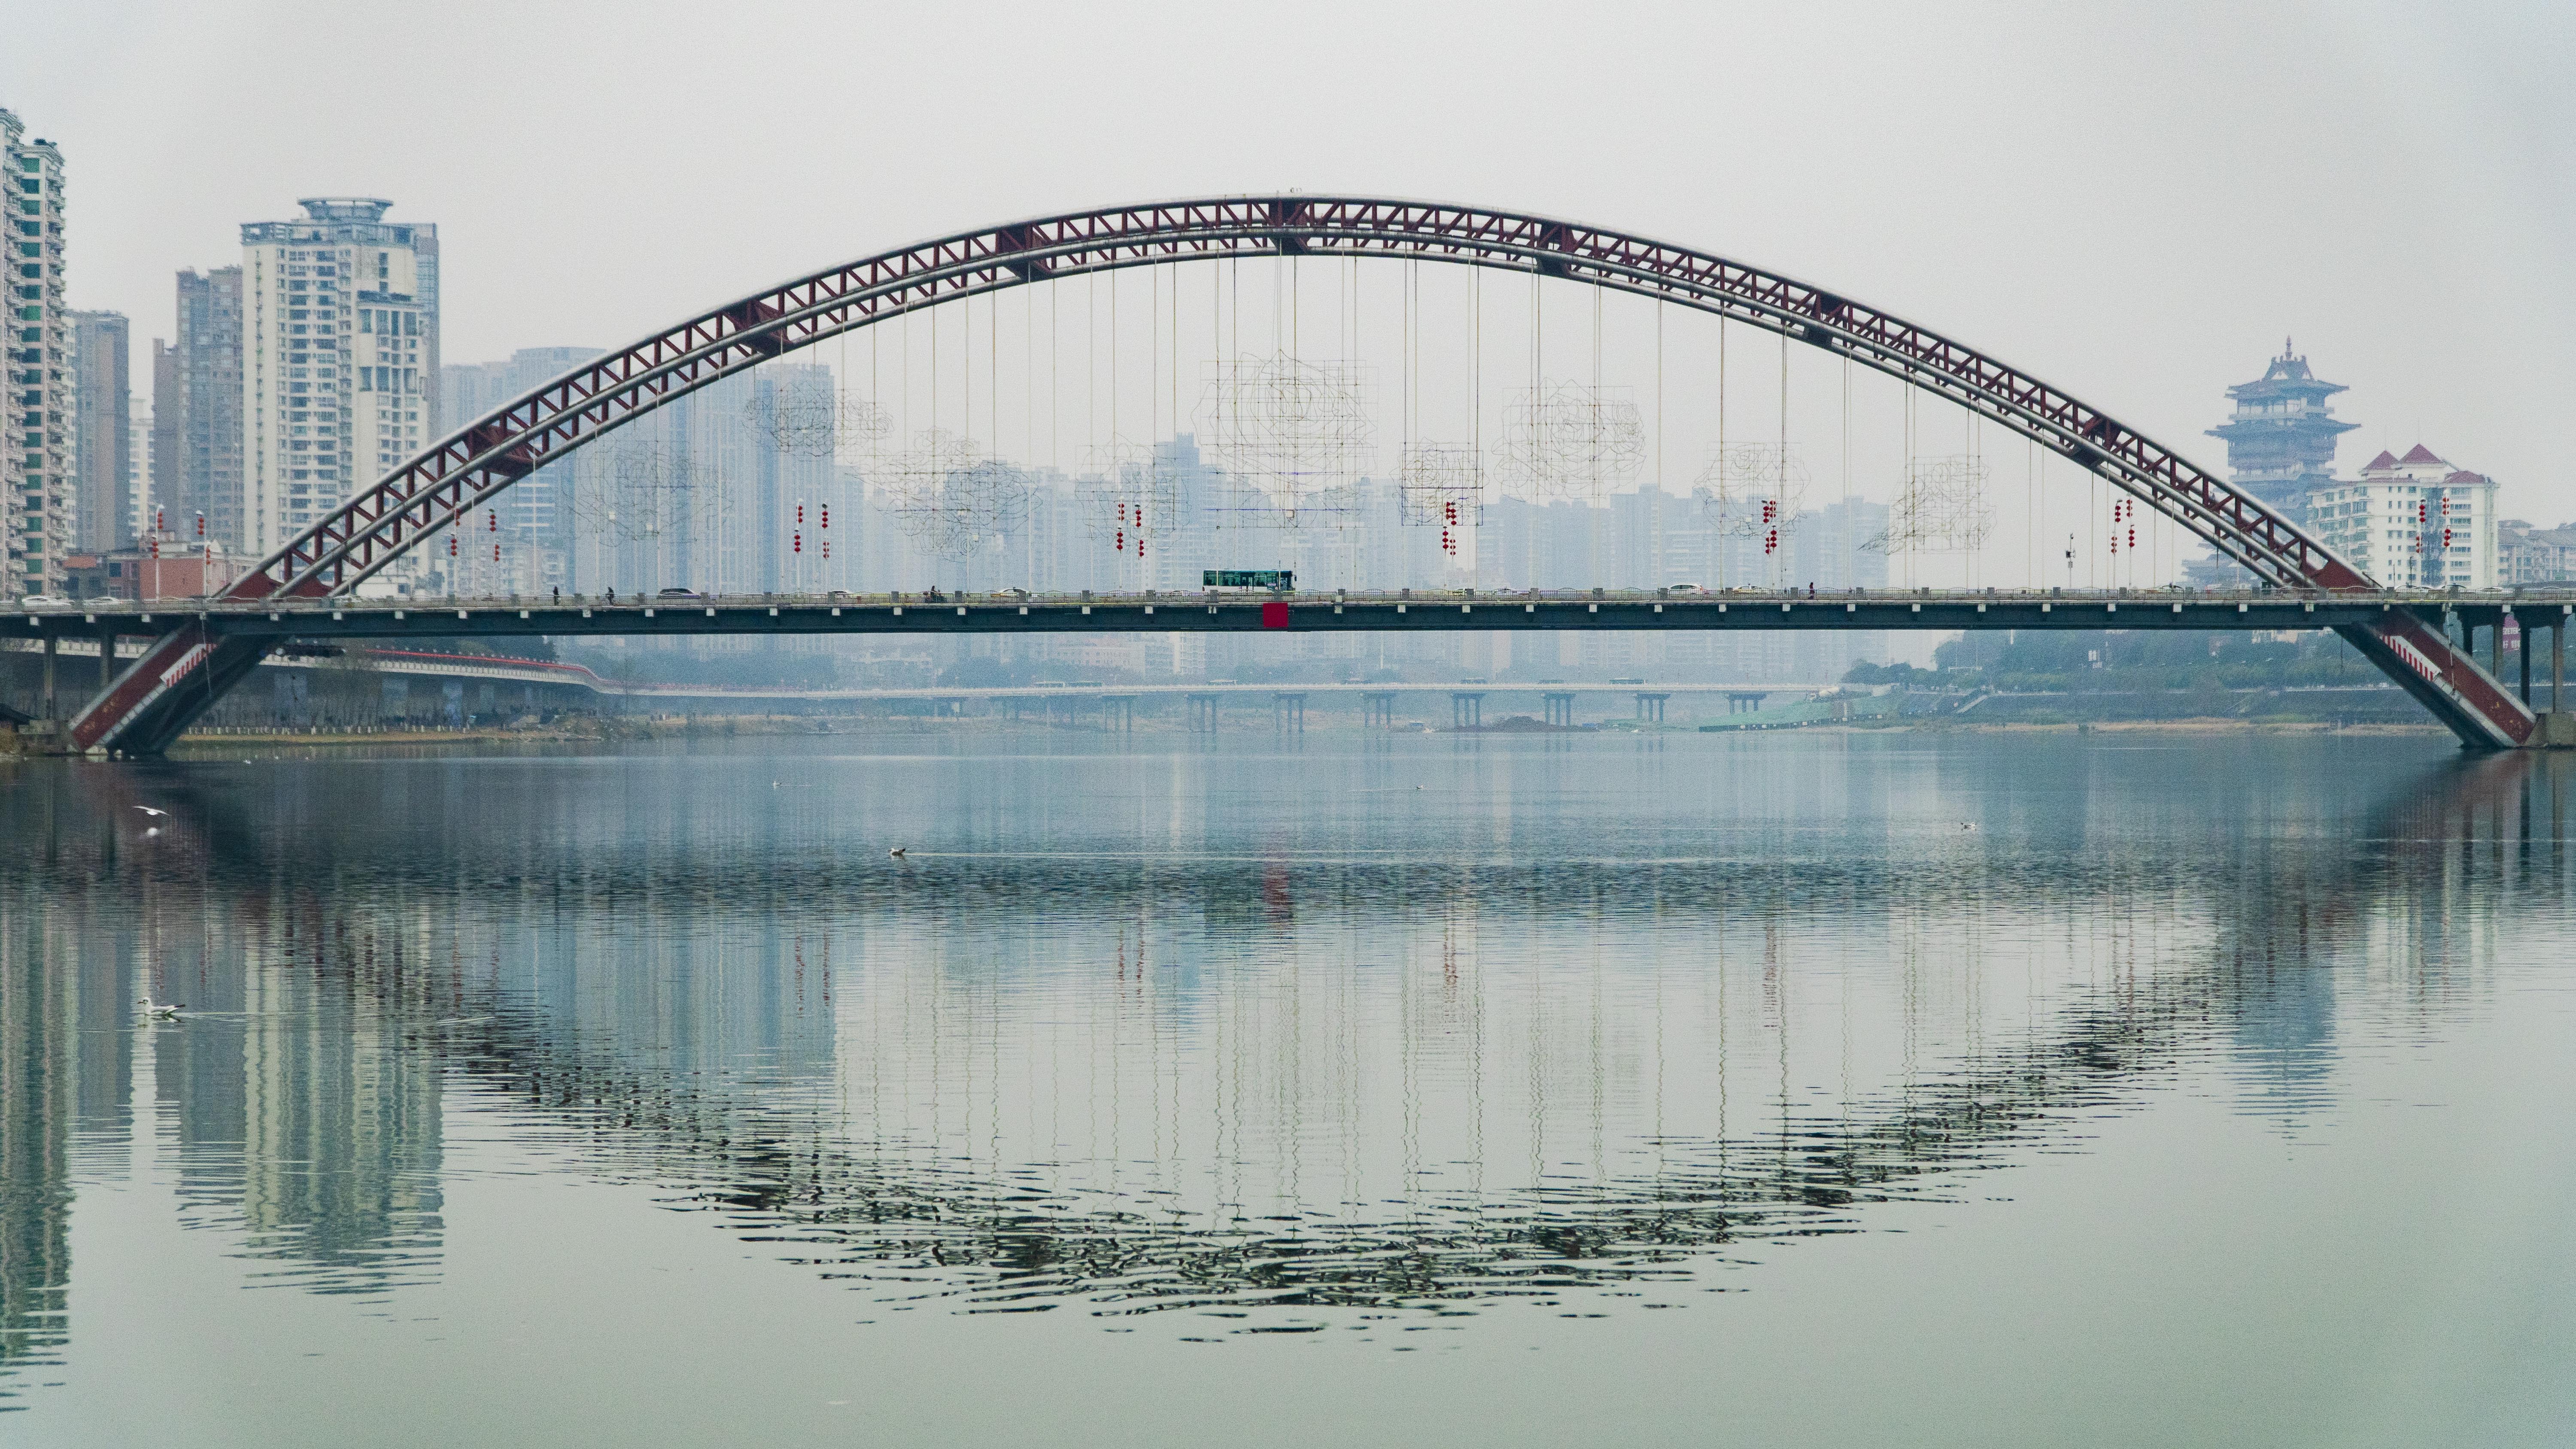 涪陵乌江三桥图片